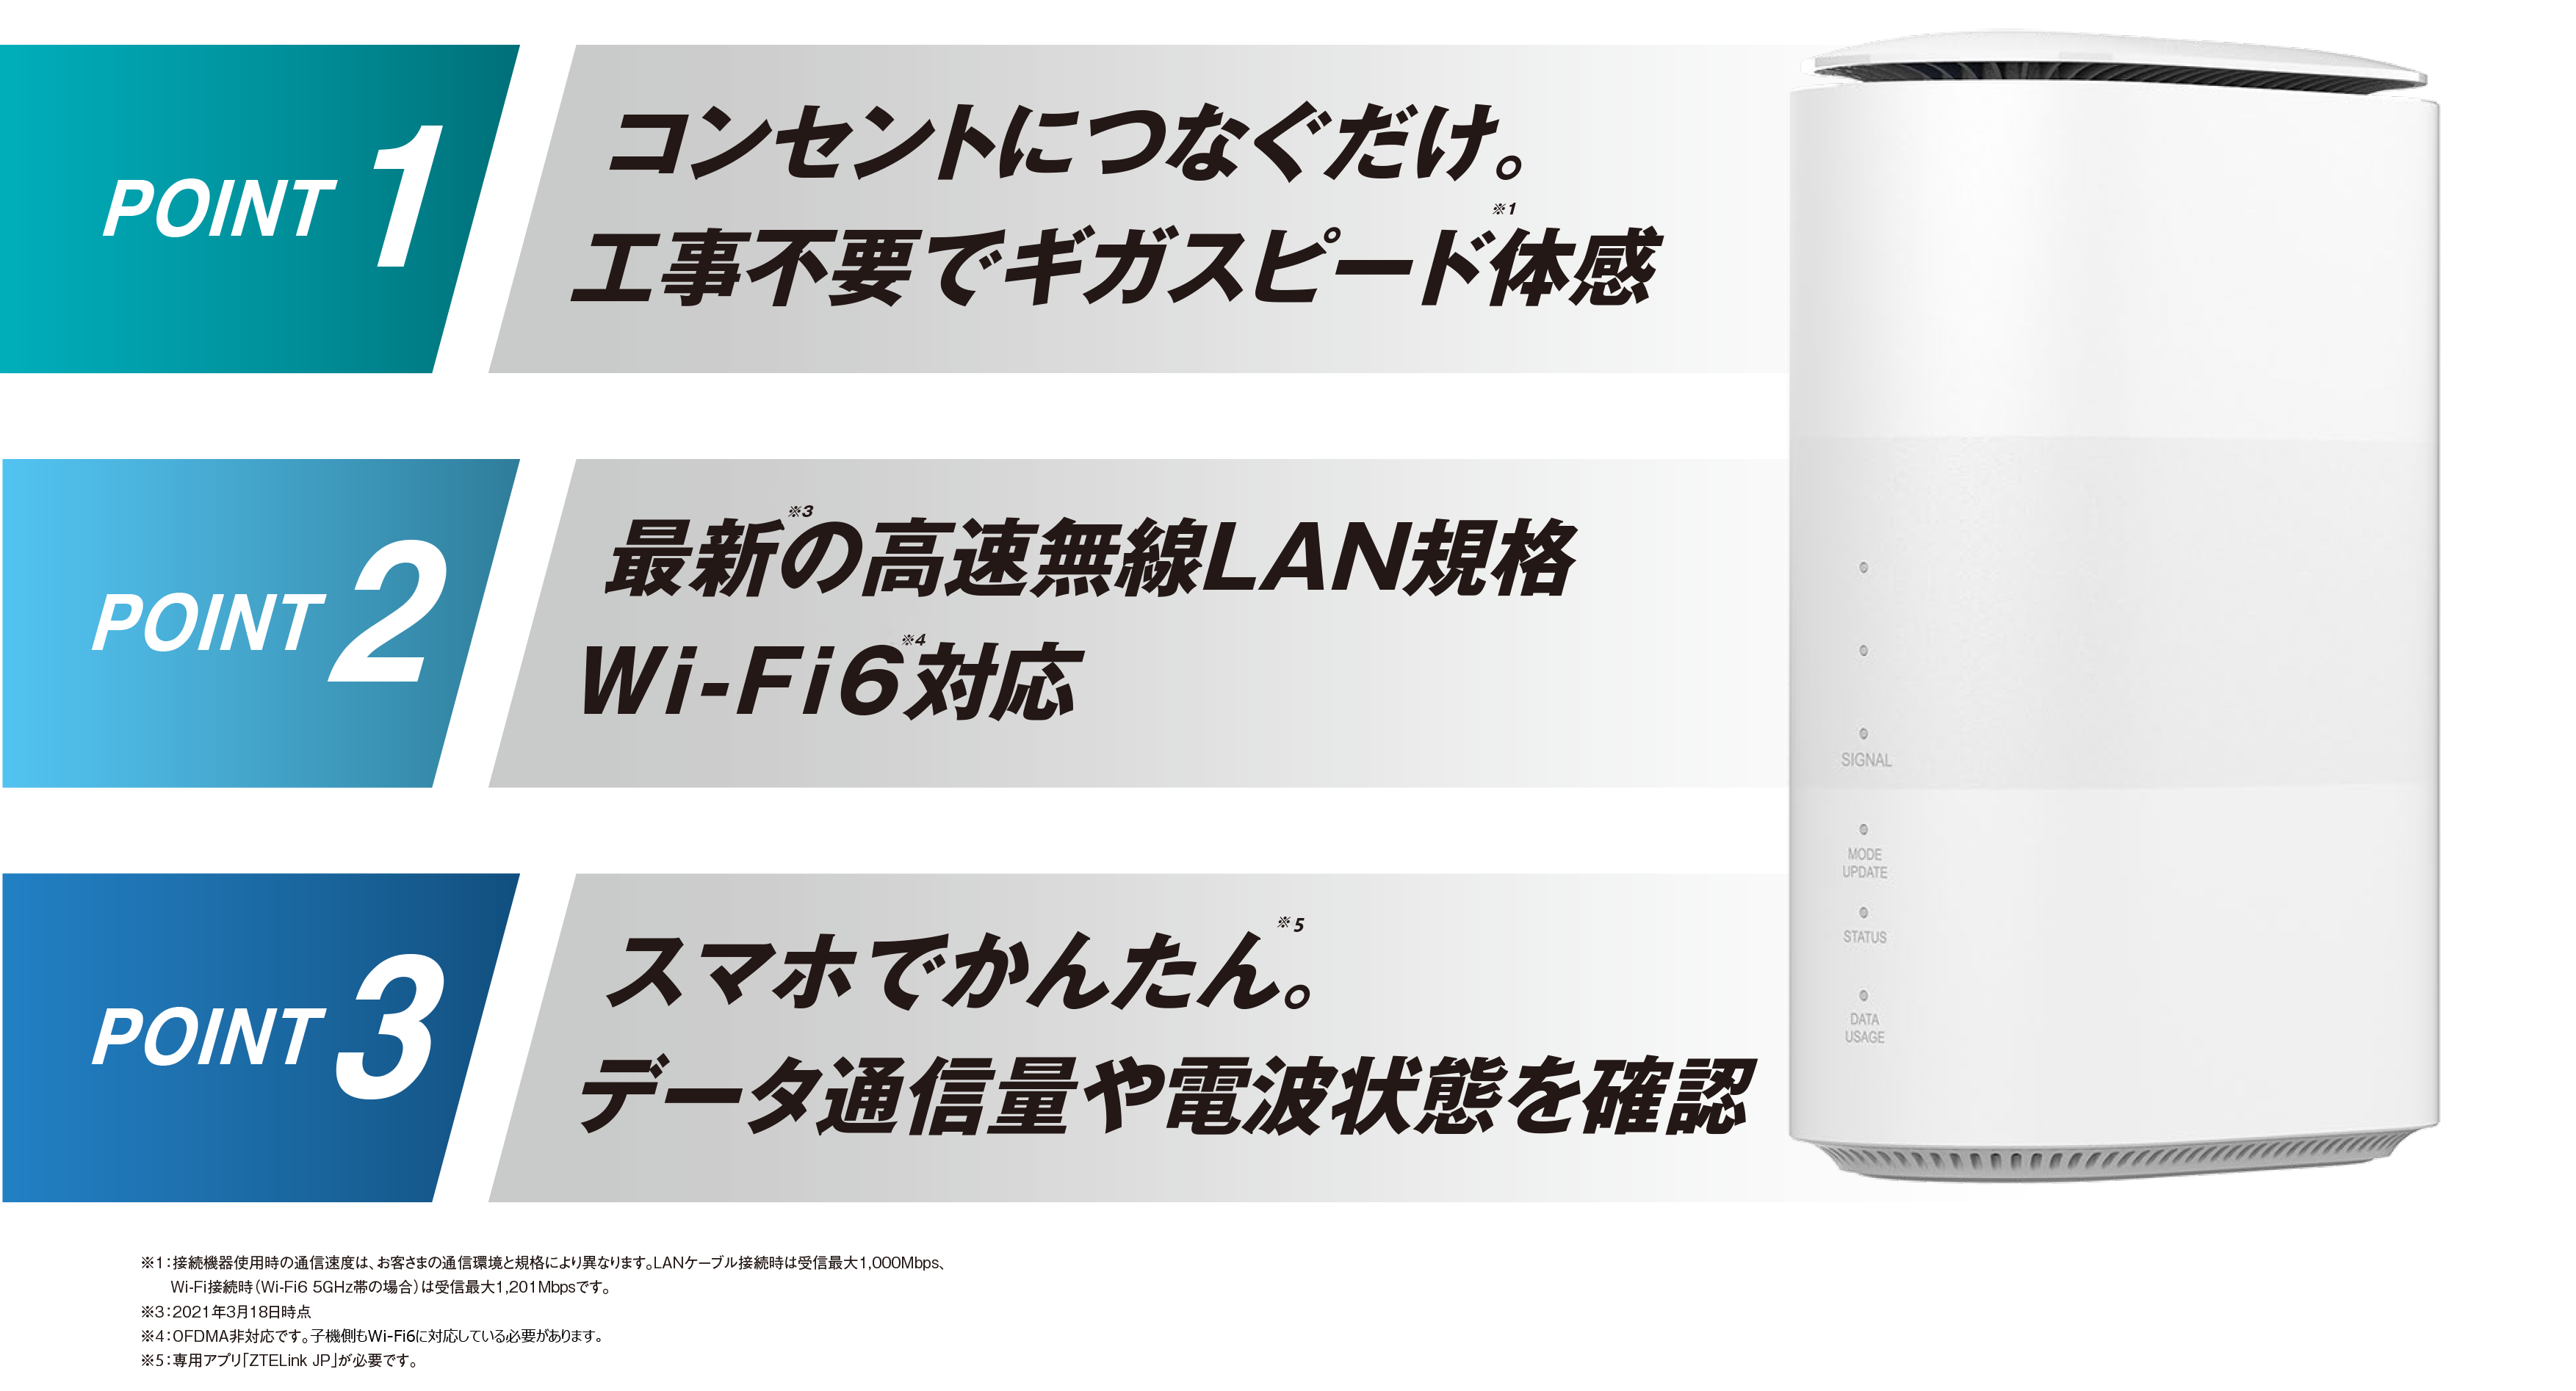 新品未使用 UQ WiMAX Speed WiFi HOME 5G L11 - www.splashecopark.com.br